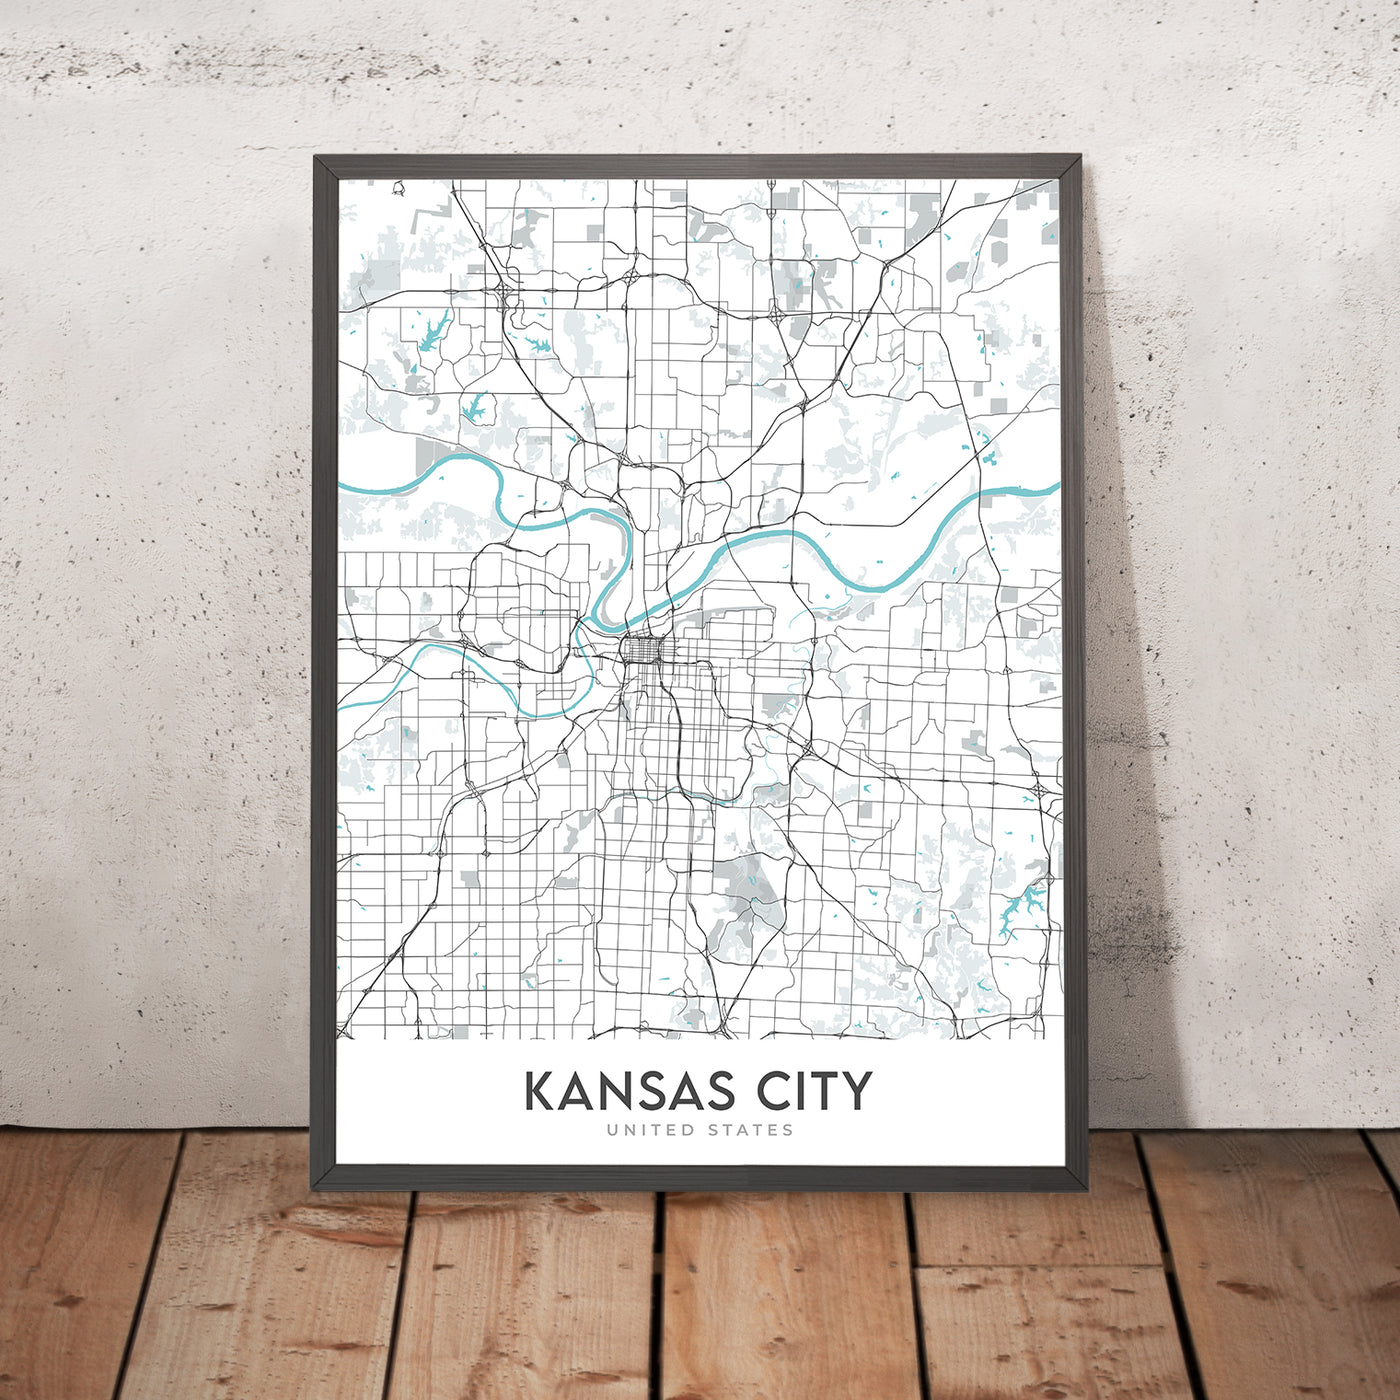 Mapa moderno de la ciudad de Kansas City, MO: centro, Country Club Plaza, estadio Kauffman, I-70, I-35